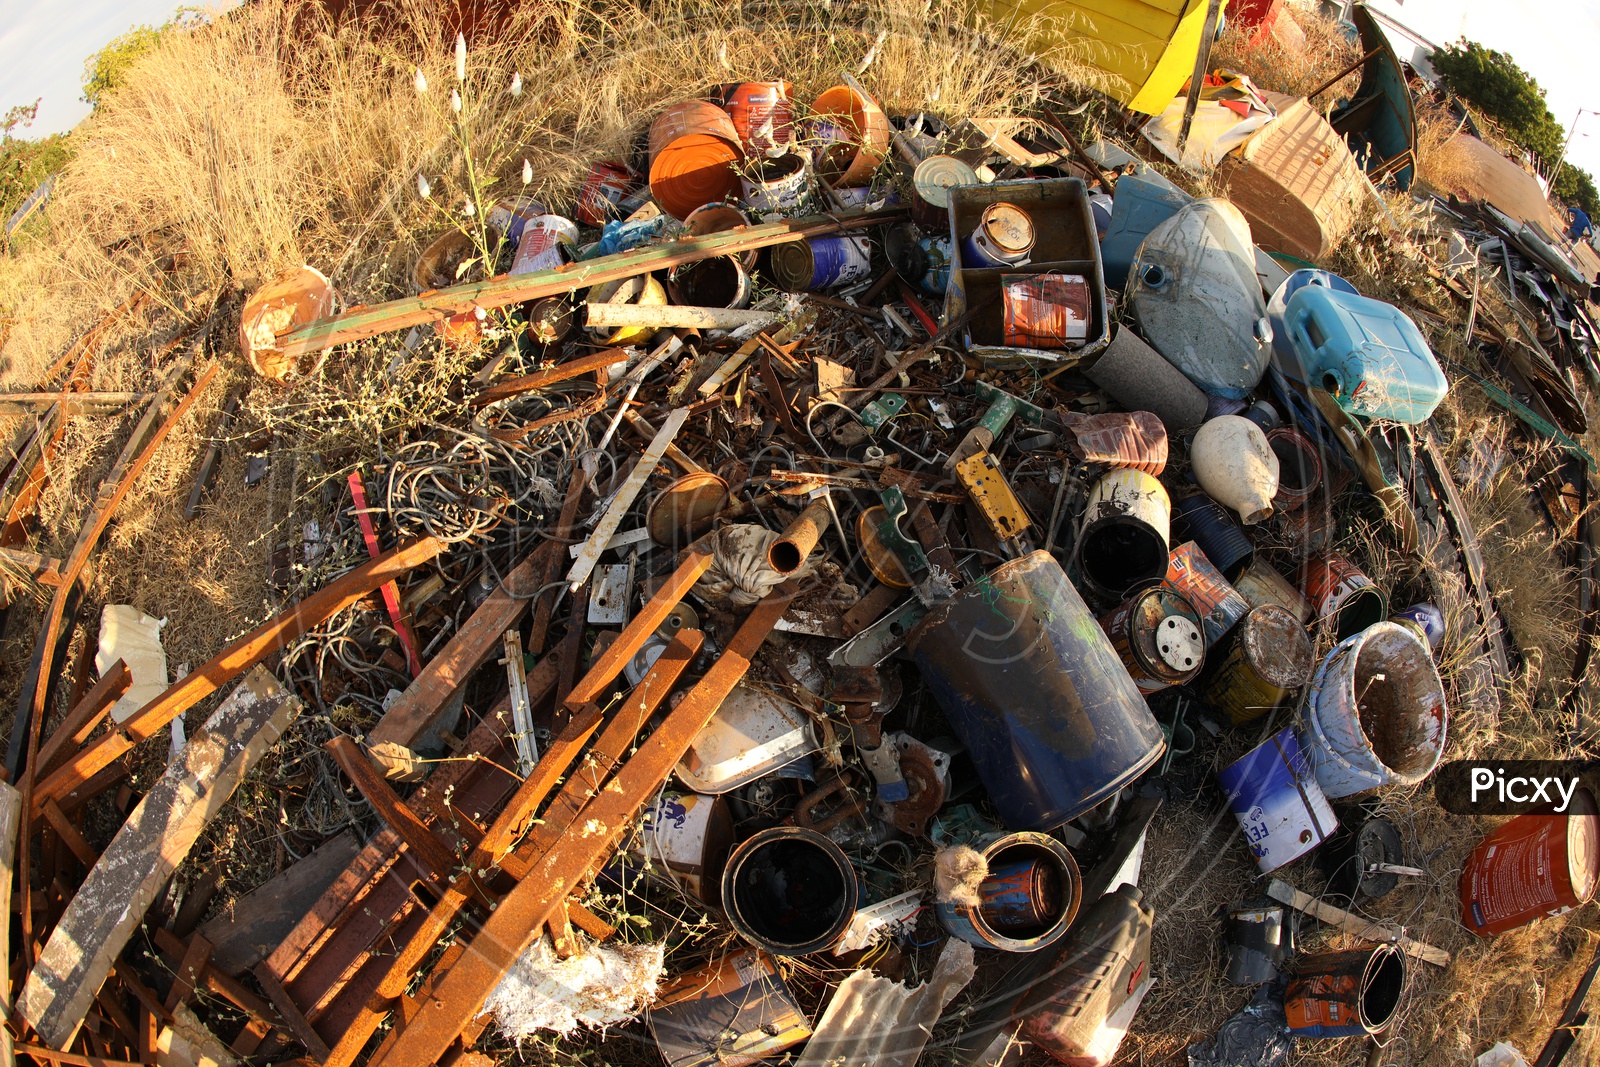 Scrap dump at a dump yard - Iron metals